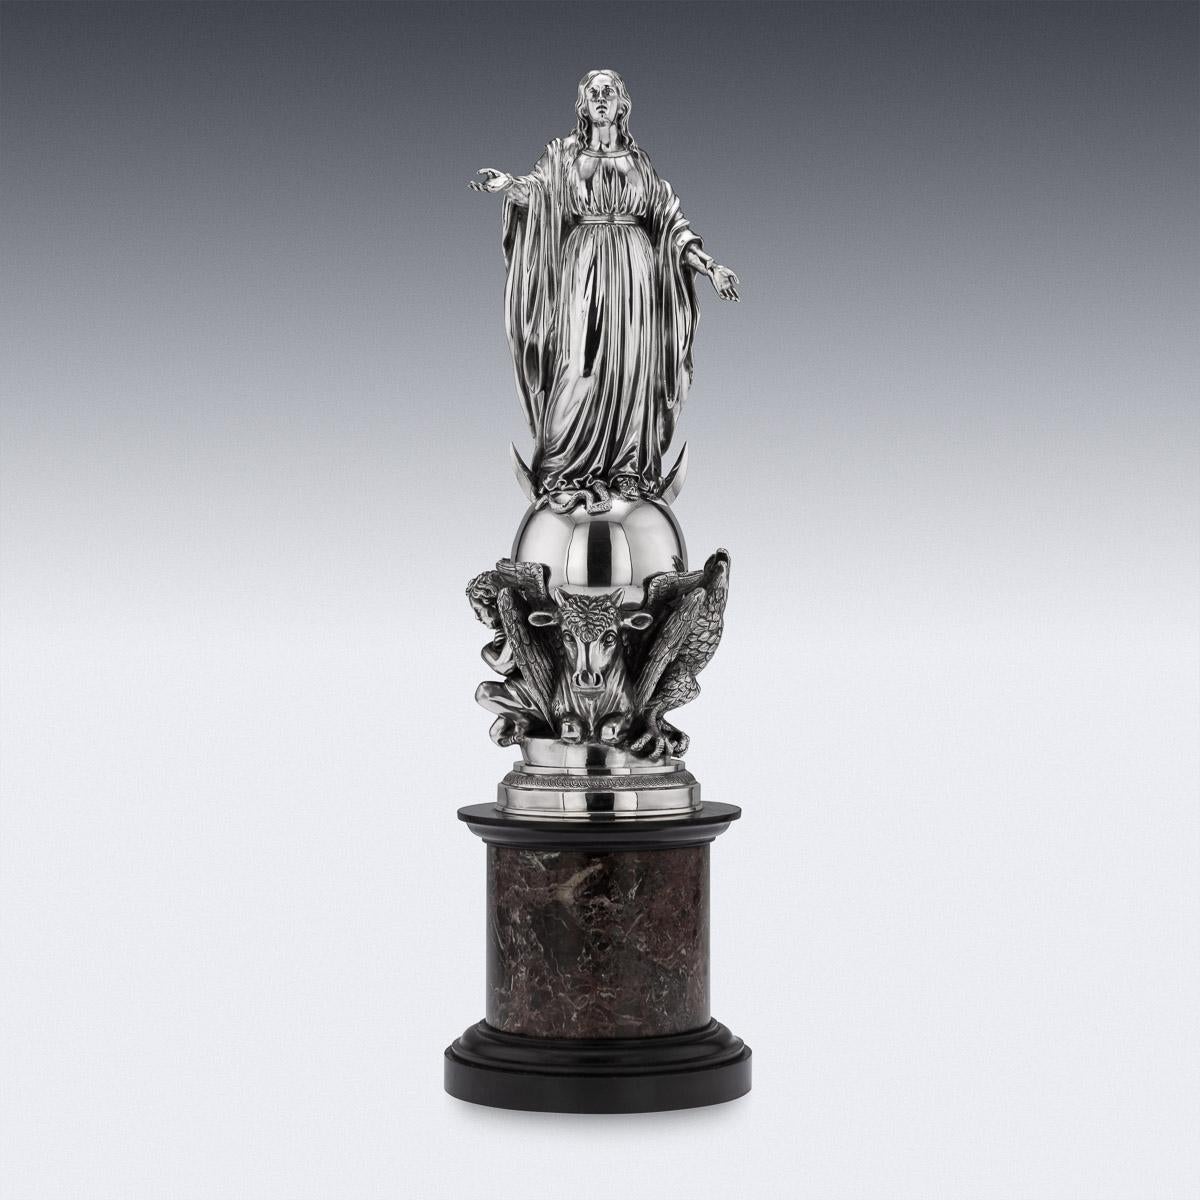 Statuette monumentale française en argent massif du XIXe siècle, reposant sur un socle en marbre. La statue est modelée de manière réaliste comme une figure de Marie aux mains ouvertes, debout sur un serpent, influencée par le tableau 